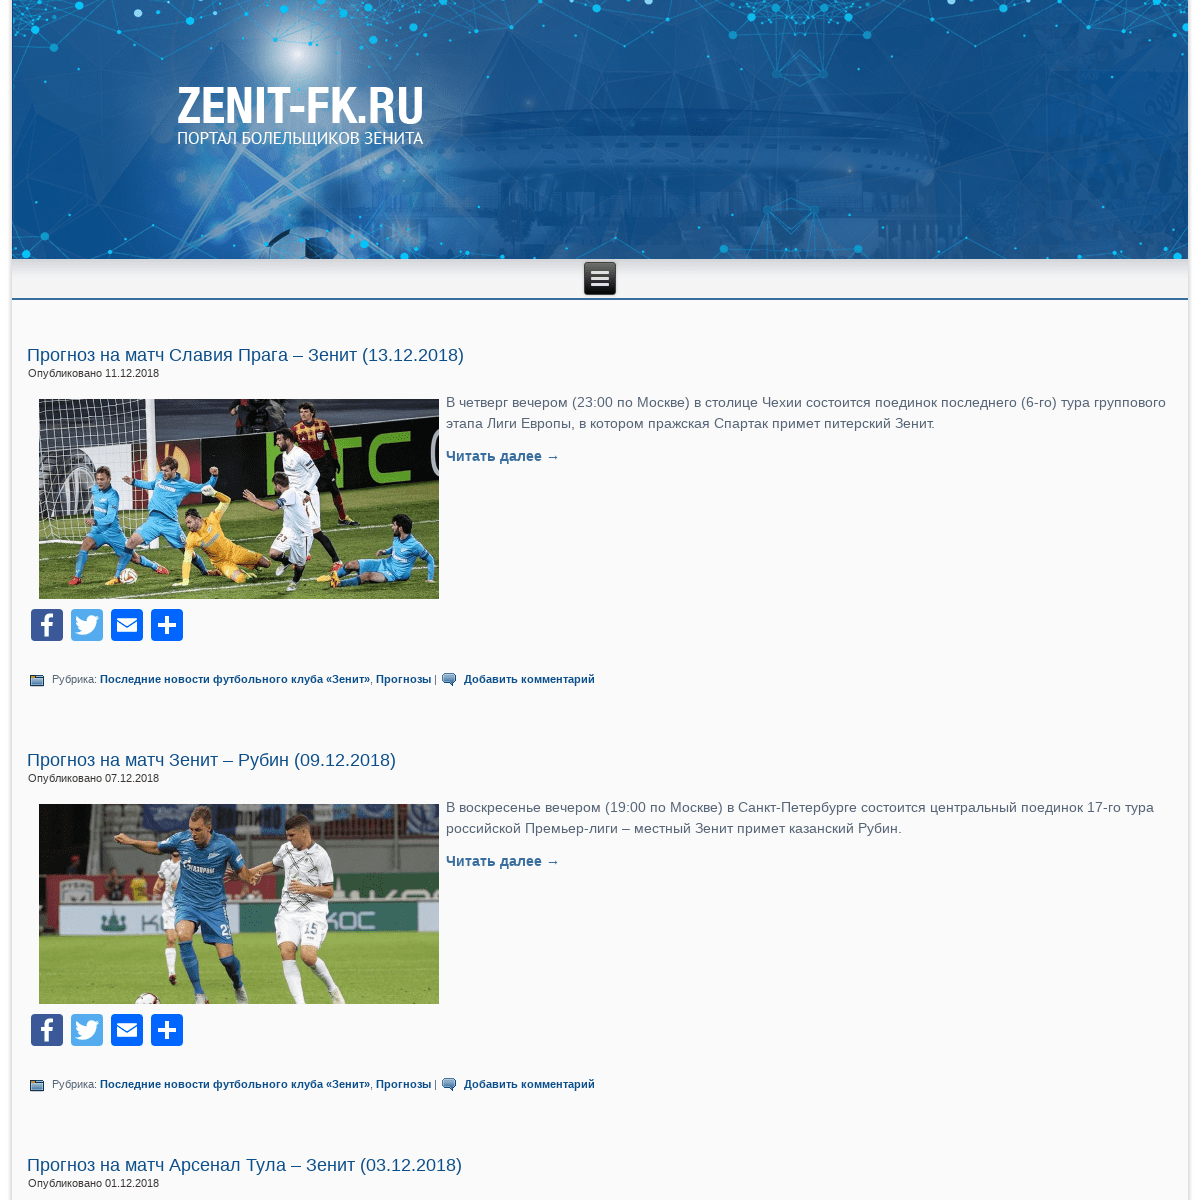 Сайт болельщиков футбольного клуба «Зенит» Санкт-Петербург